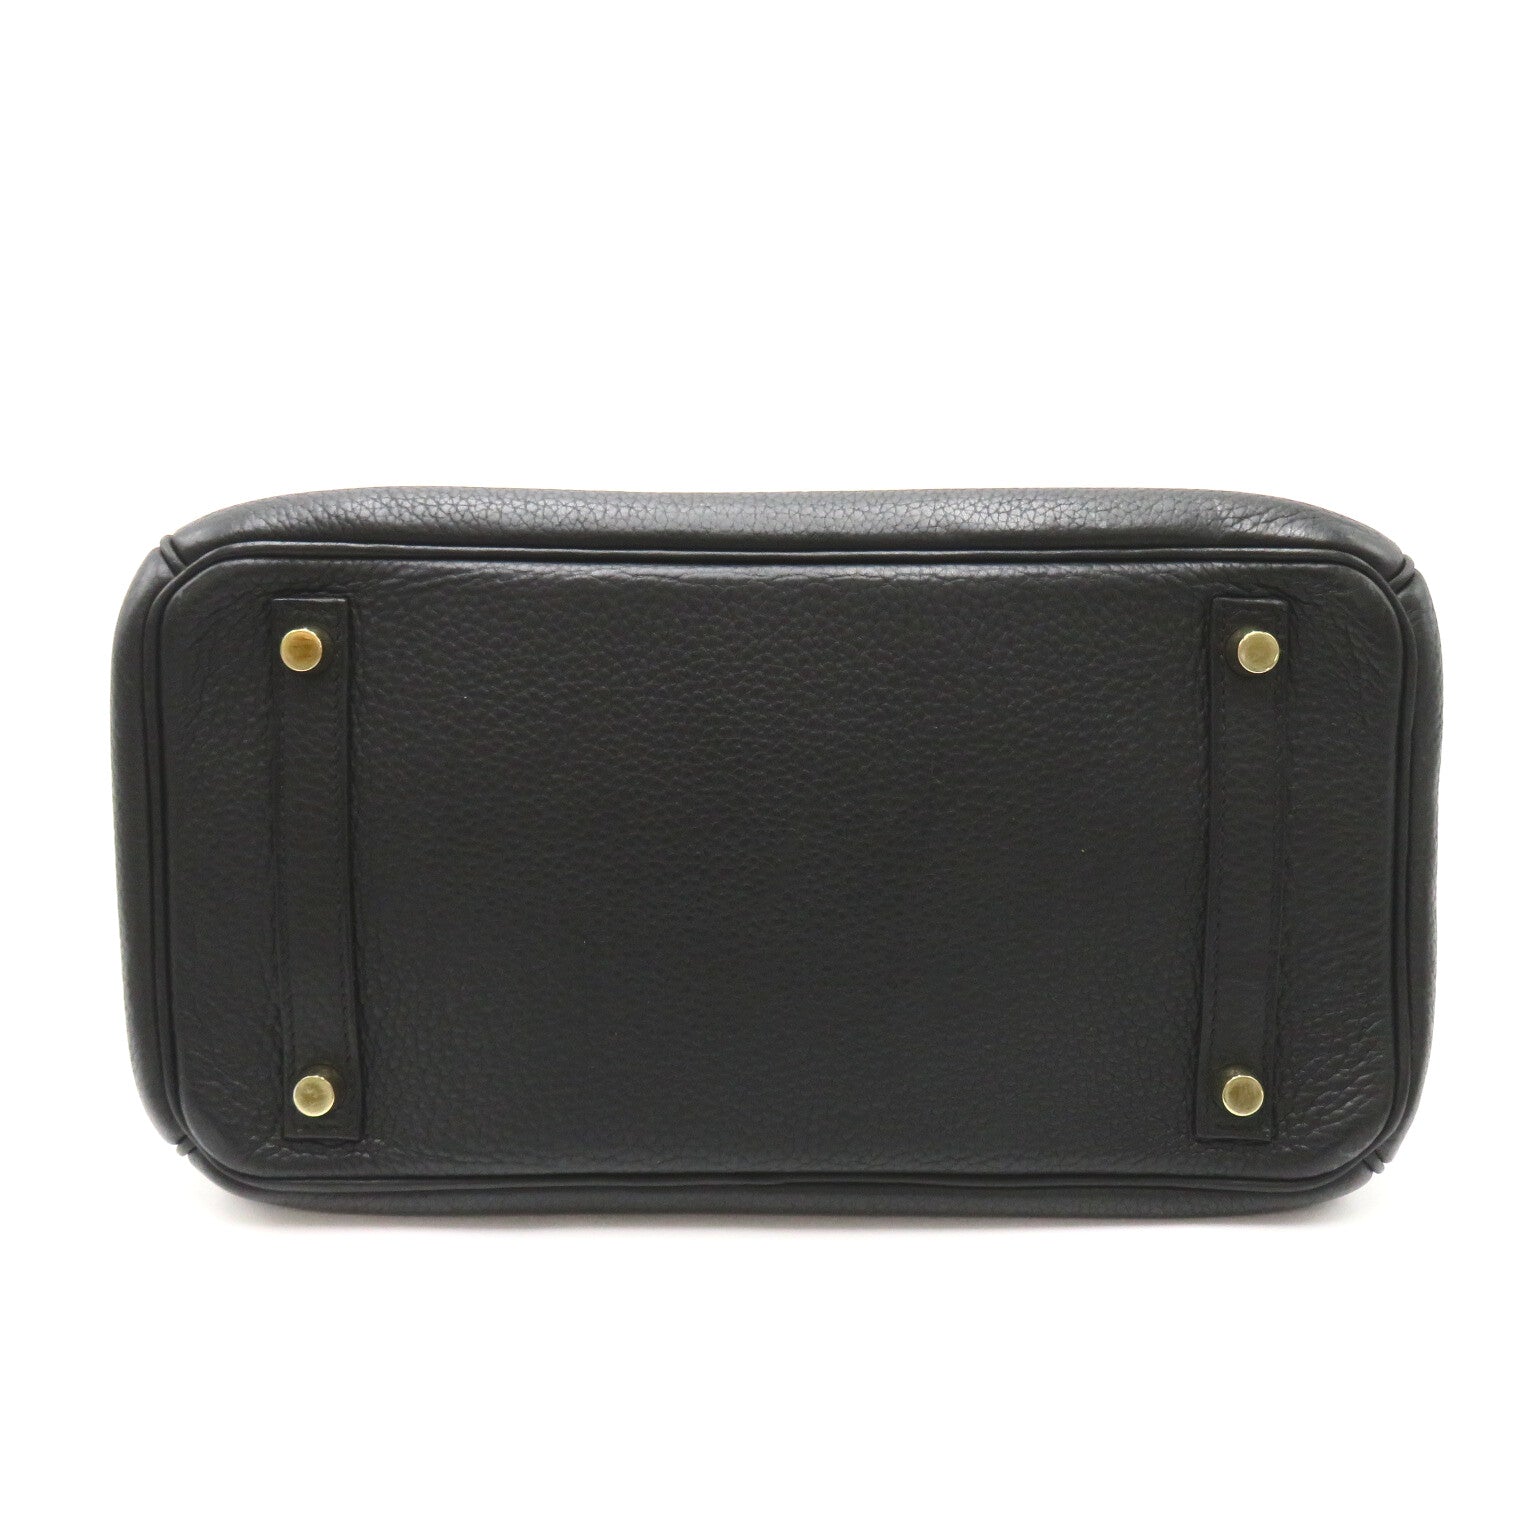 Hermes Birkin 30 Black Handbag Handbag Handbag